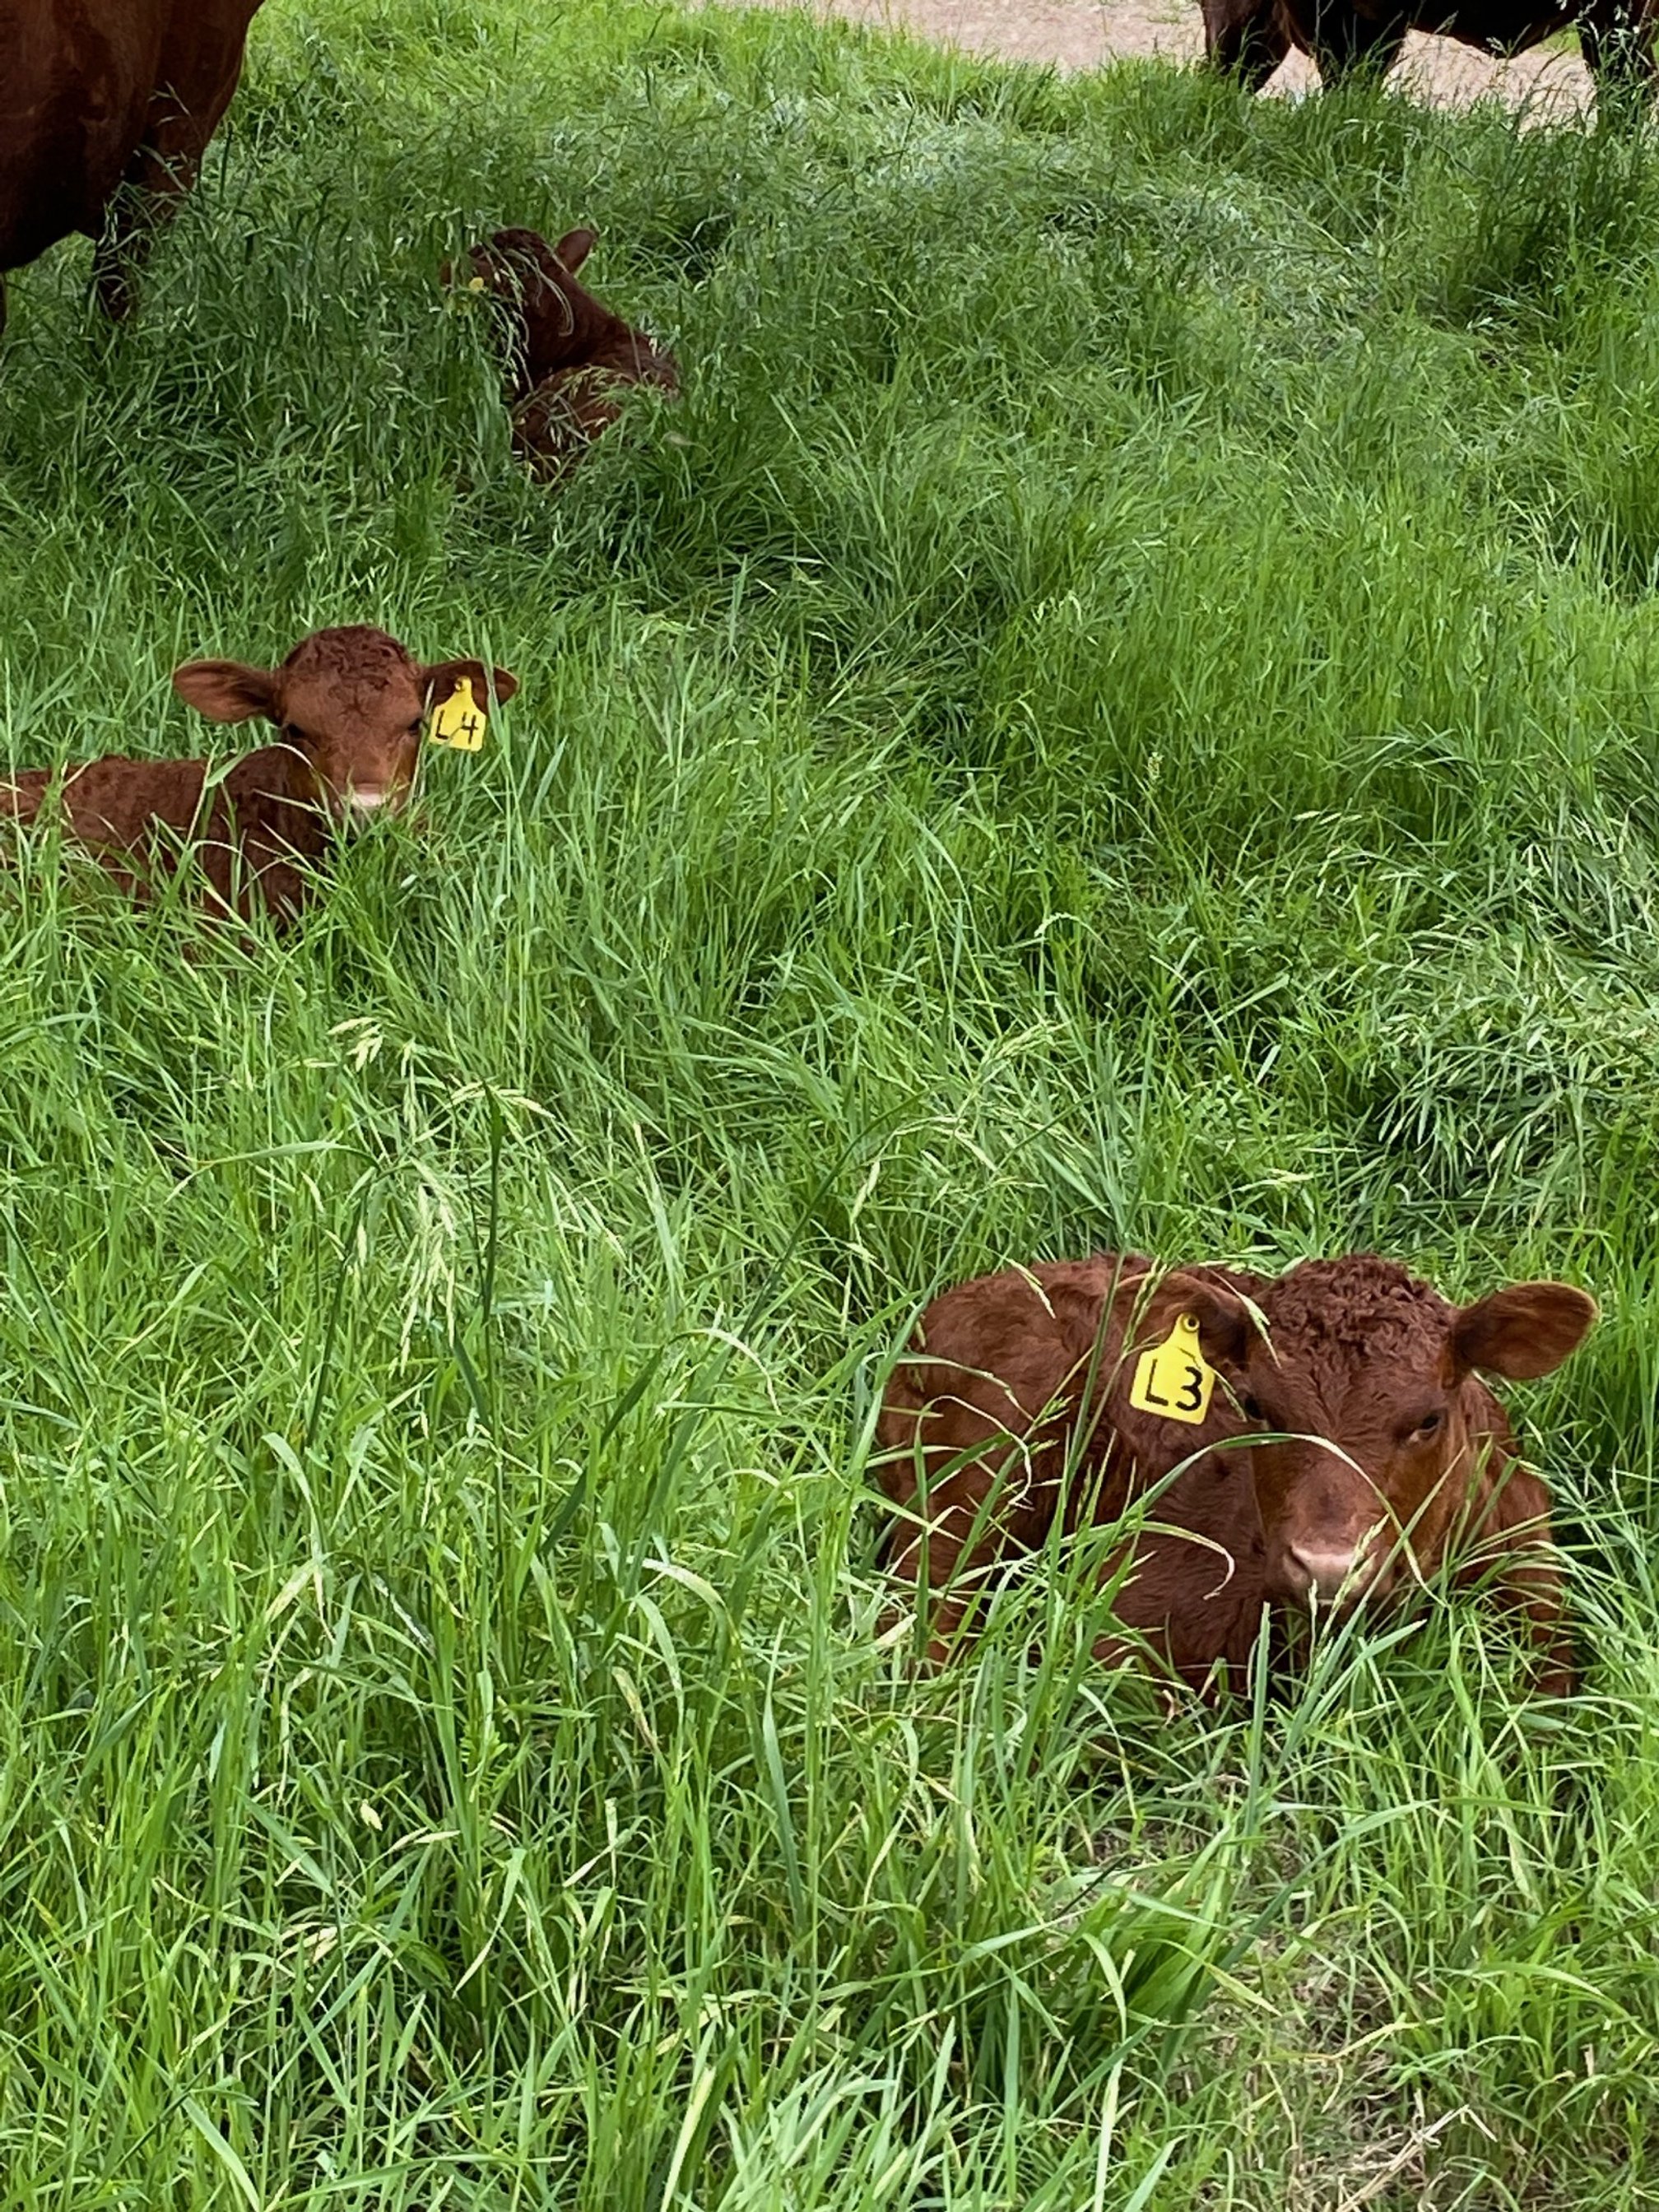 calves in the grass.jpg